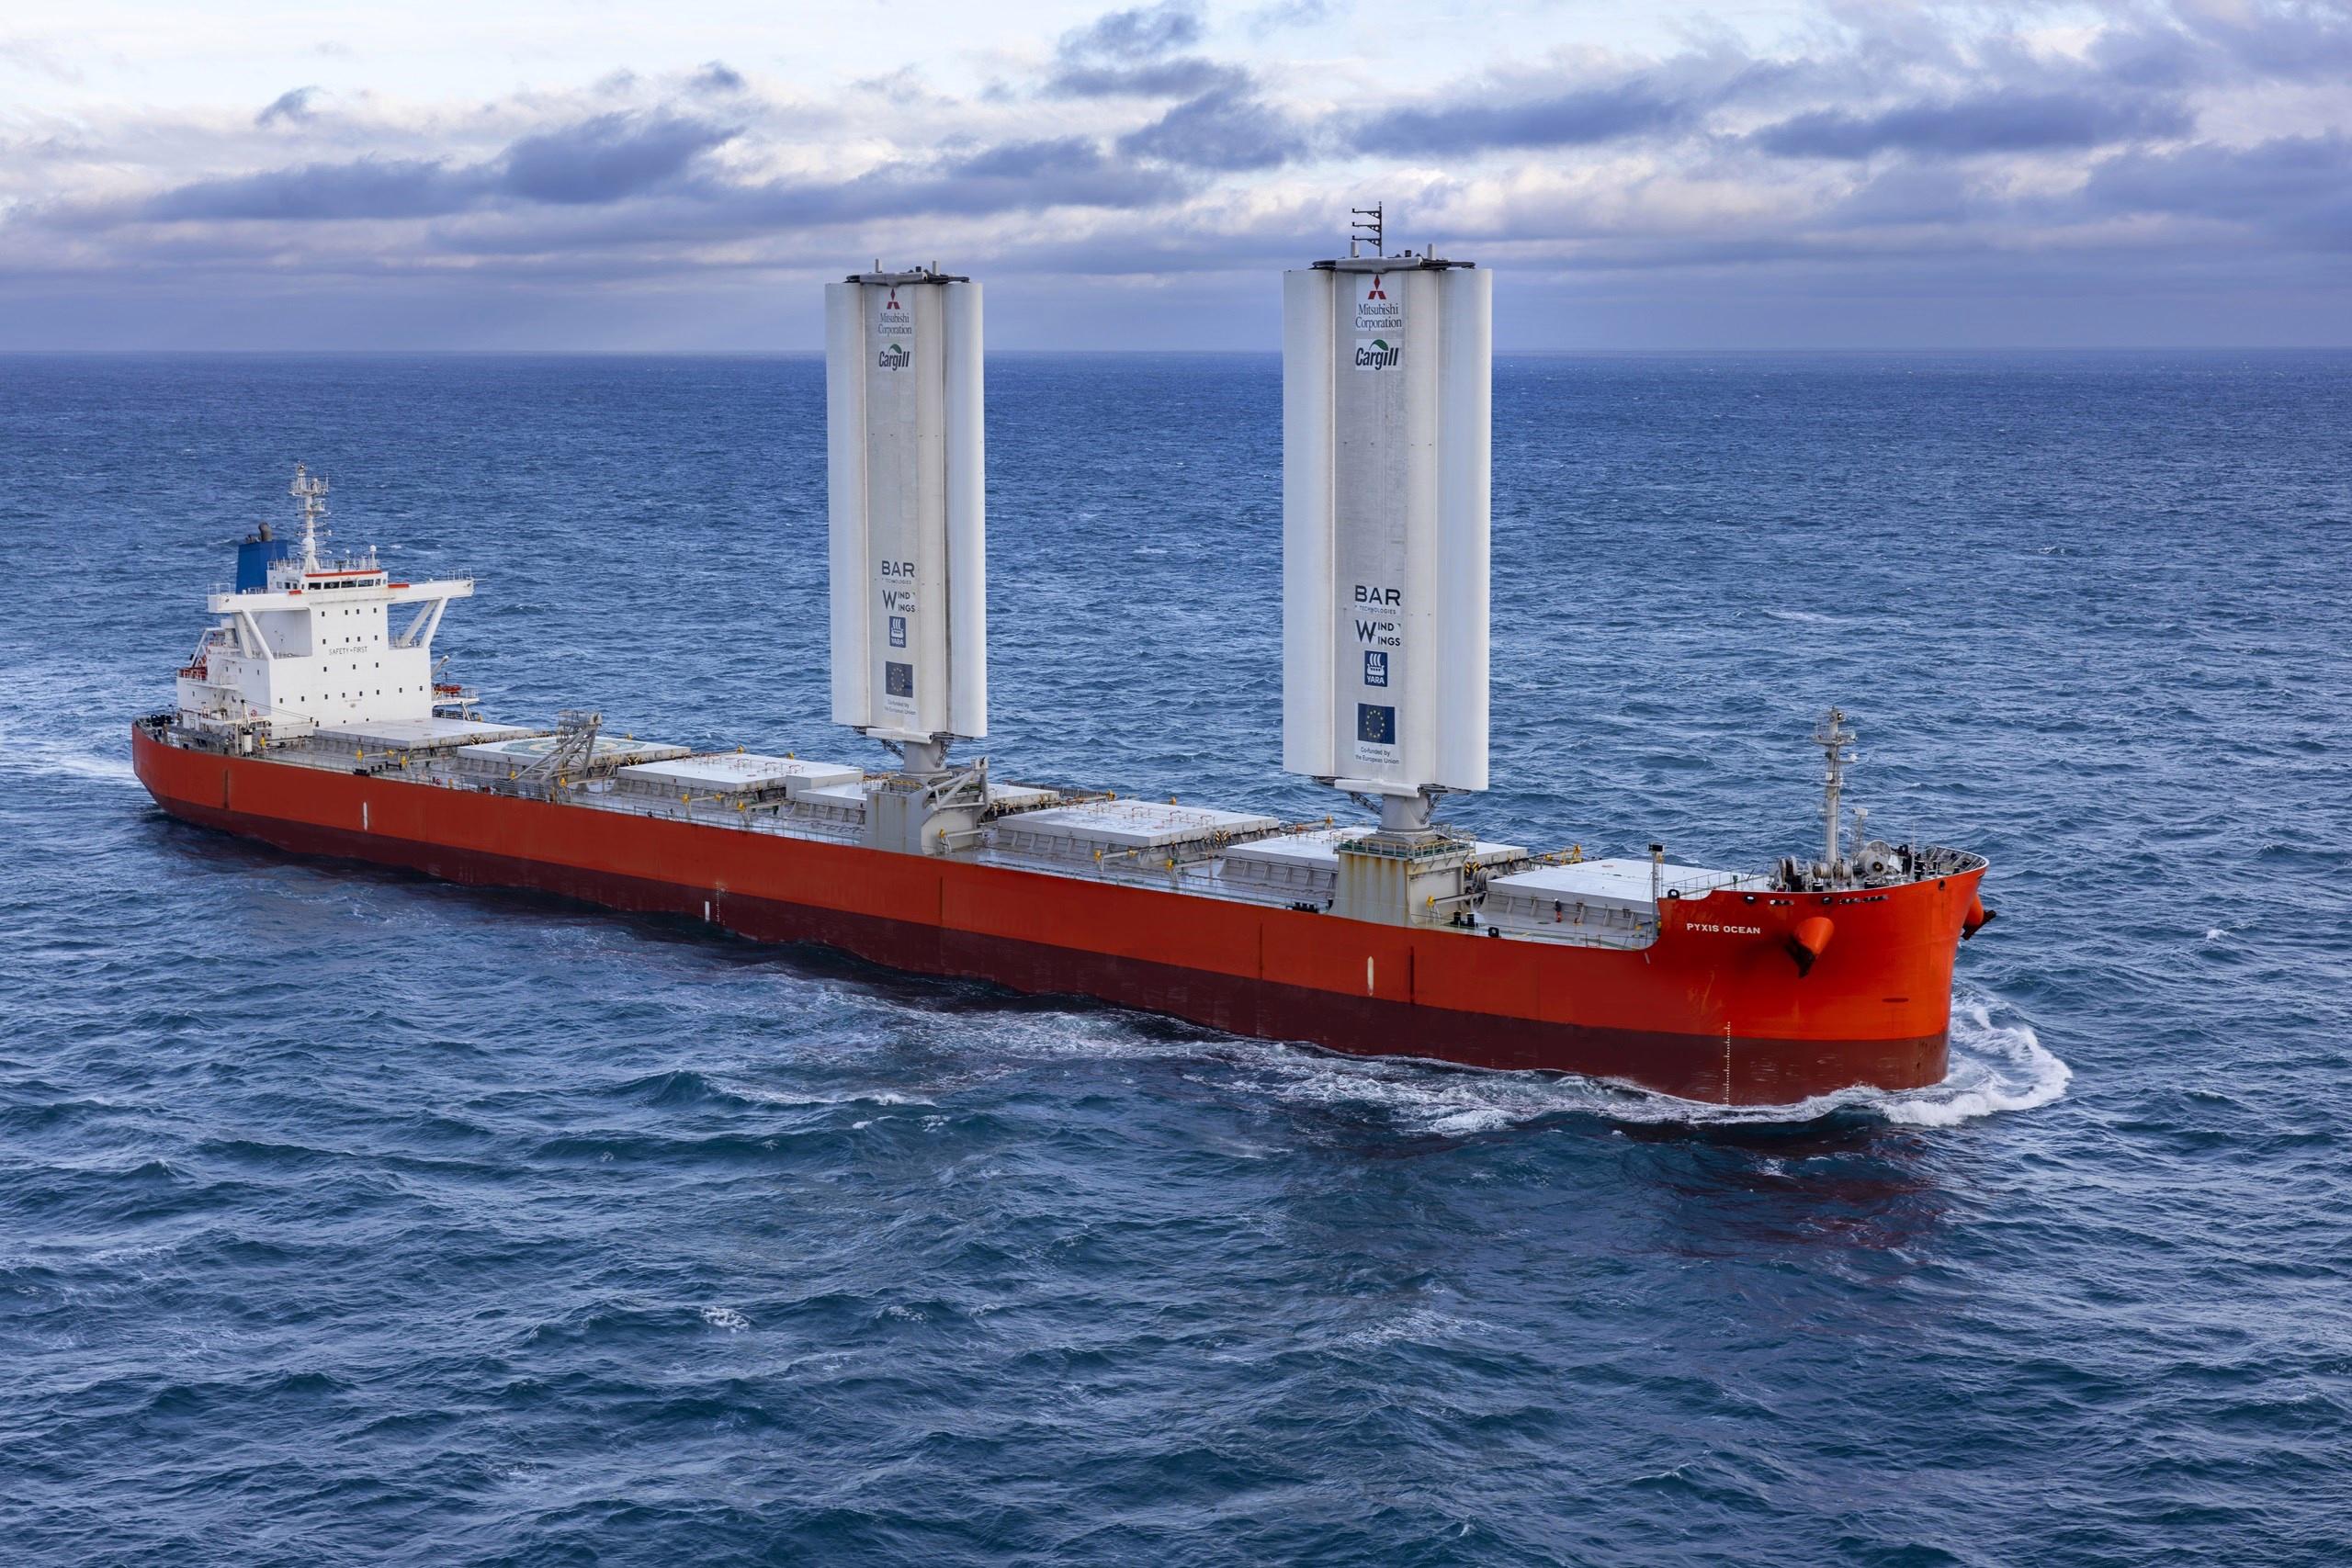 Yenilikçi “WindWing” gemi yelkenleri günde 12 ton yakıt tasarrufu sağladı